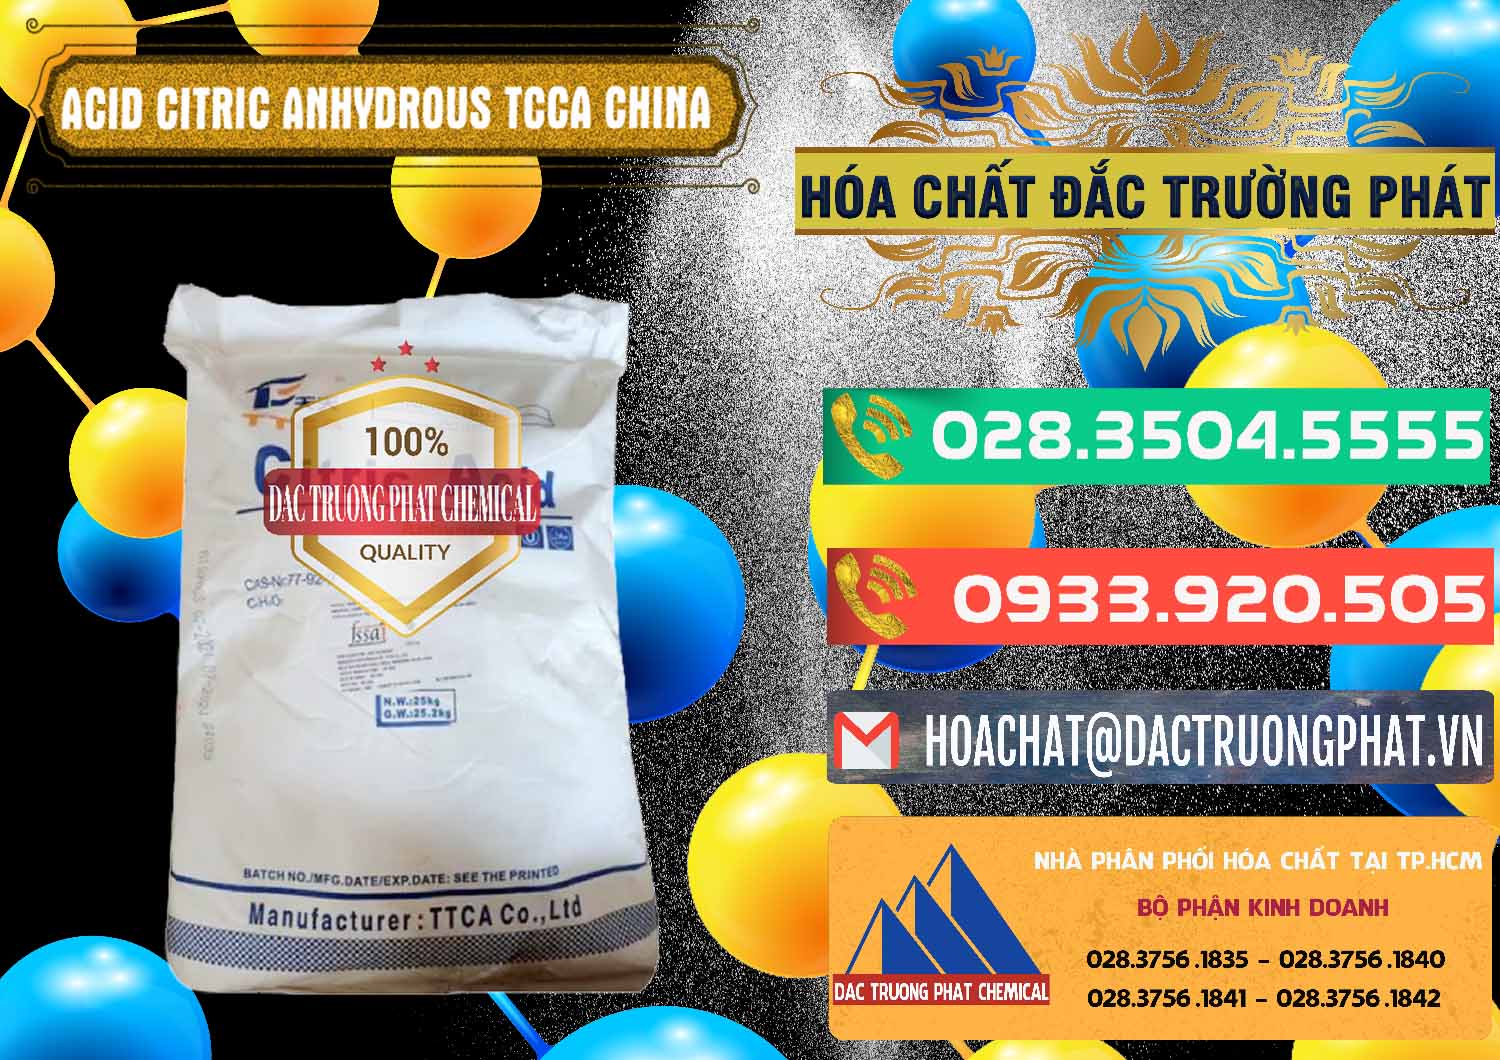 Cty cung cấp & bán Acid Citric - Axit Citric Anhydrous TCCA Trung Quốc China - 0442 - Chuyên phân phối & kinh doanh hóa chất tại TP.HCM - congtyhoachat.com.vn